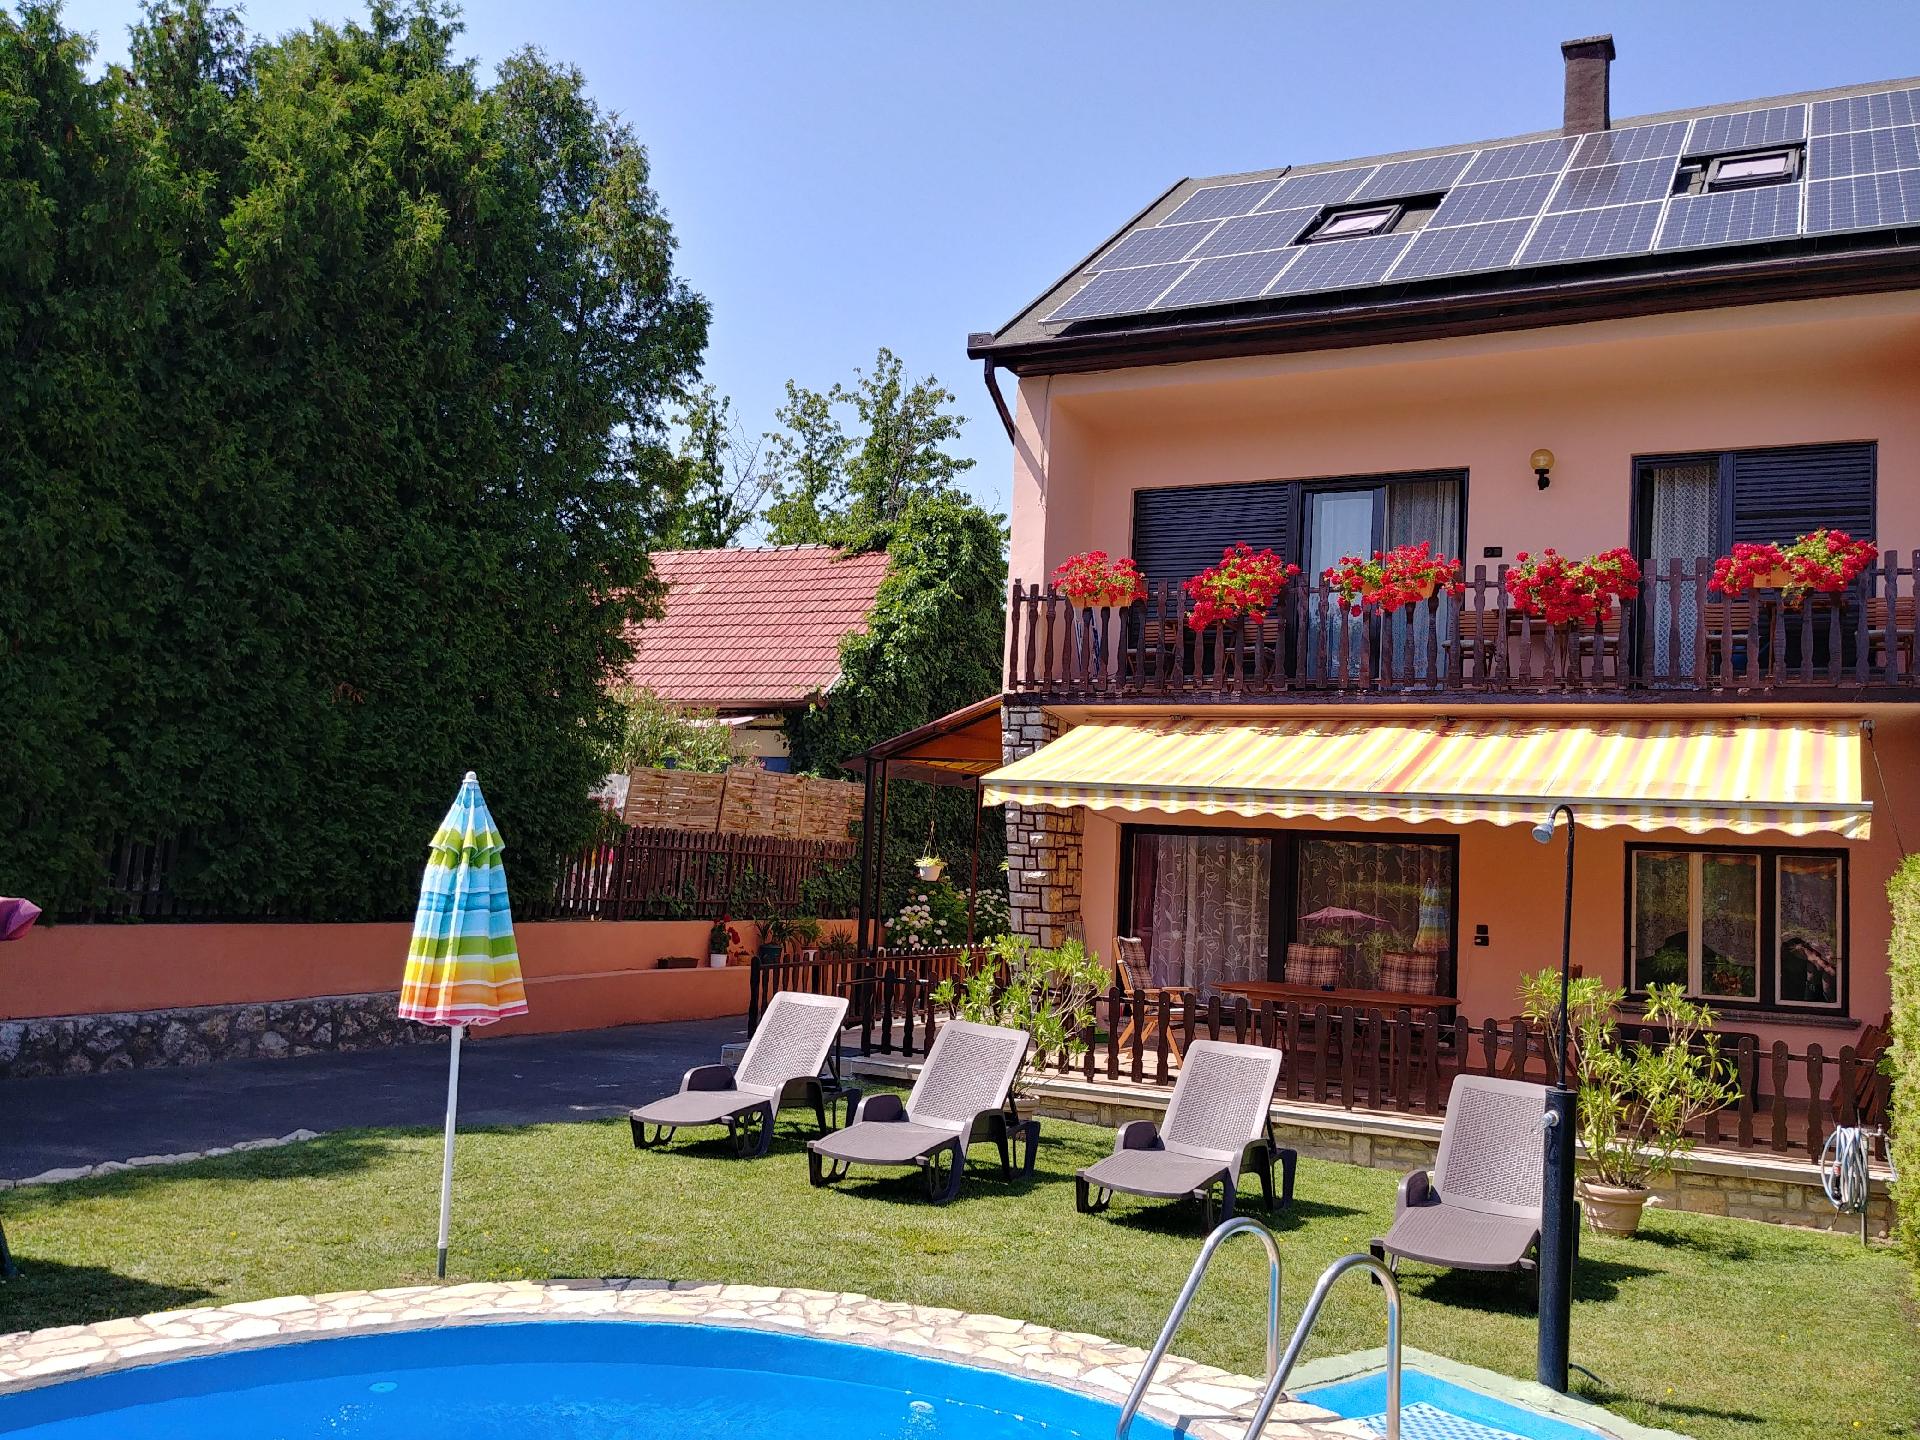 Ferienwohnung für 9 Personen ca. 140 m²  Ferienwohnung in Europa